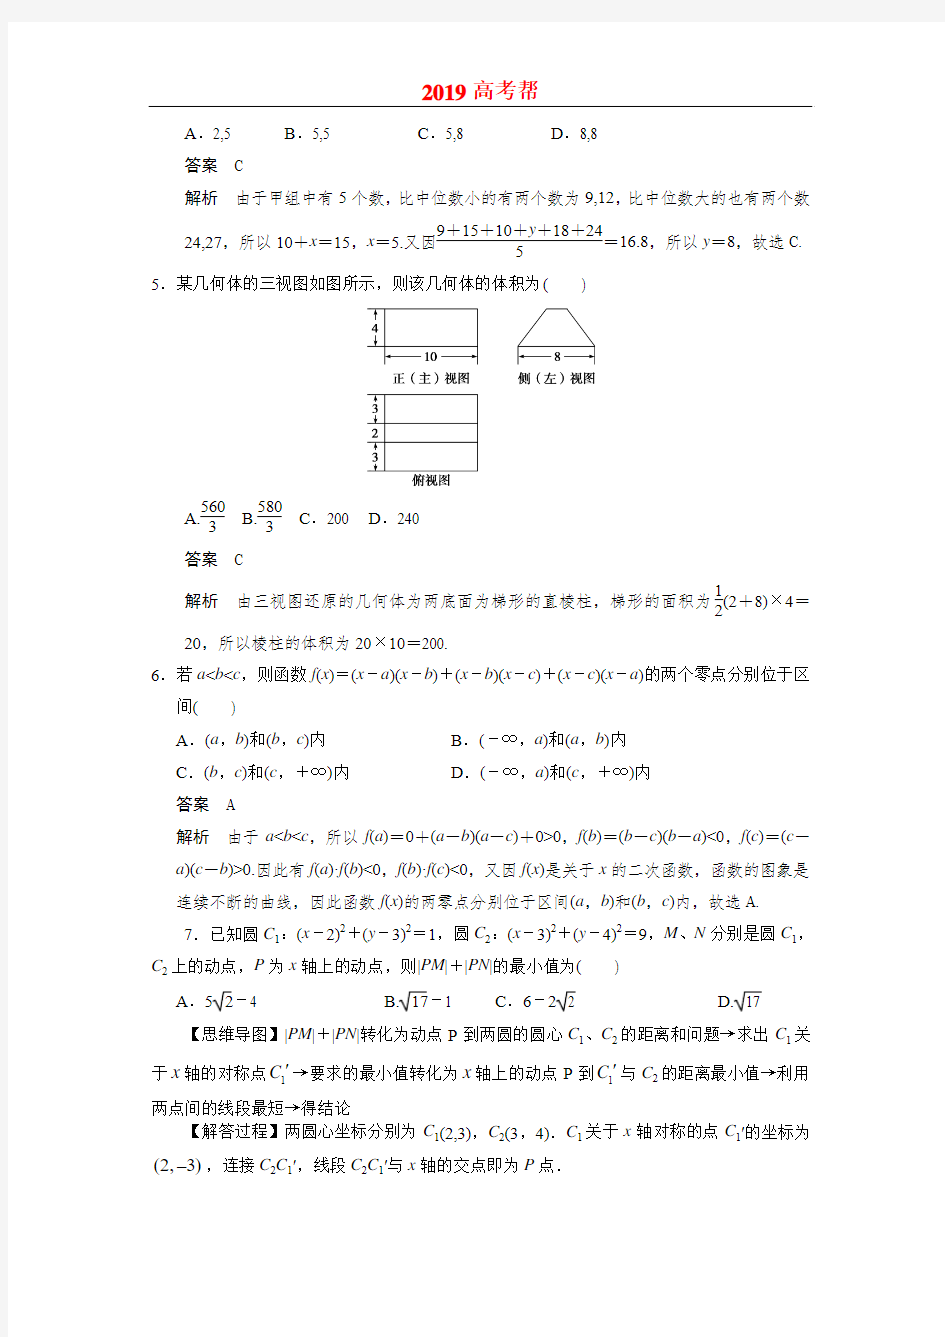 2013年高考重庆卷理科数学试题及答案